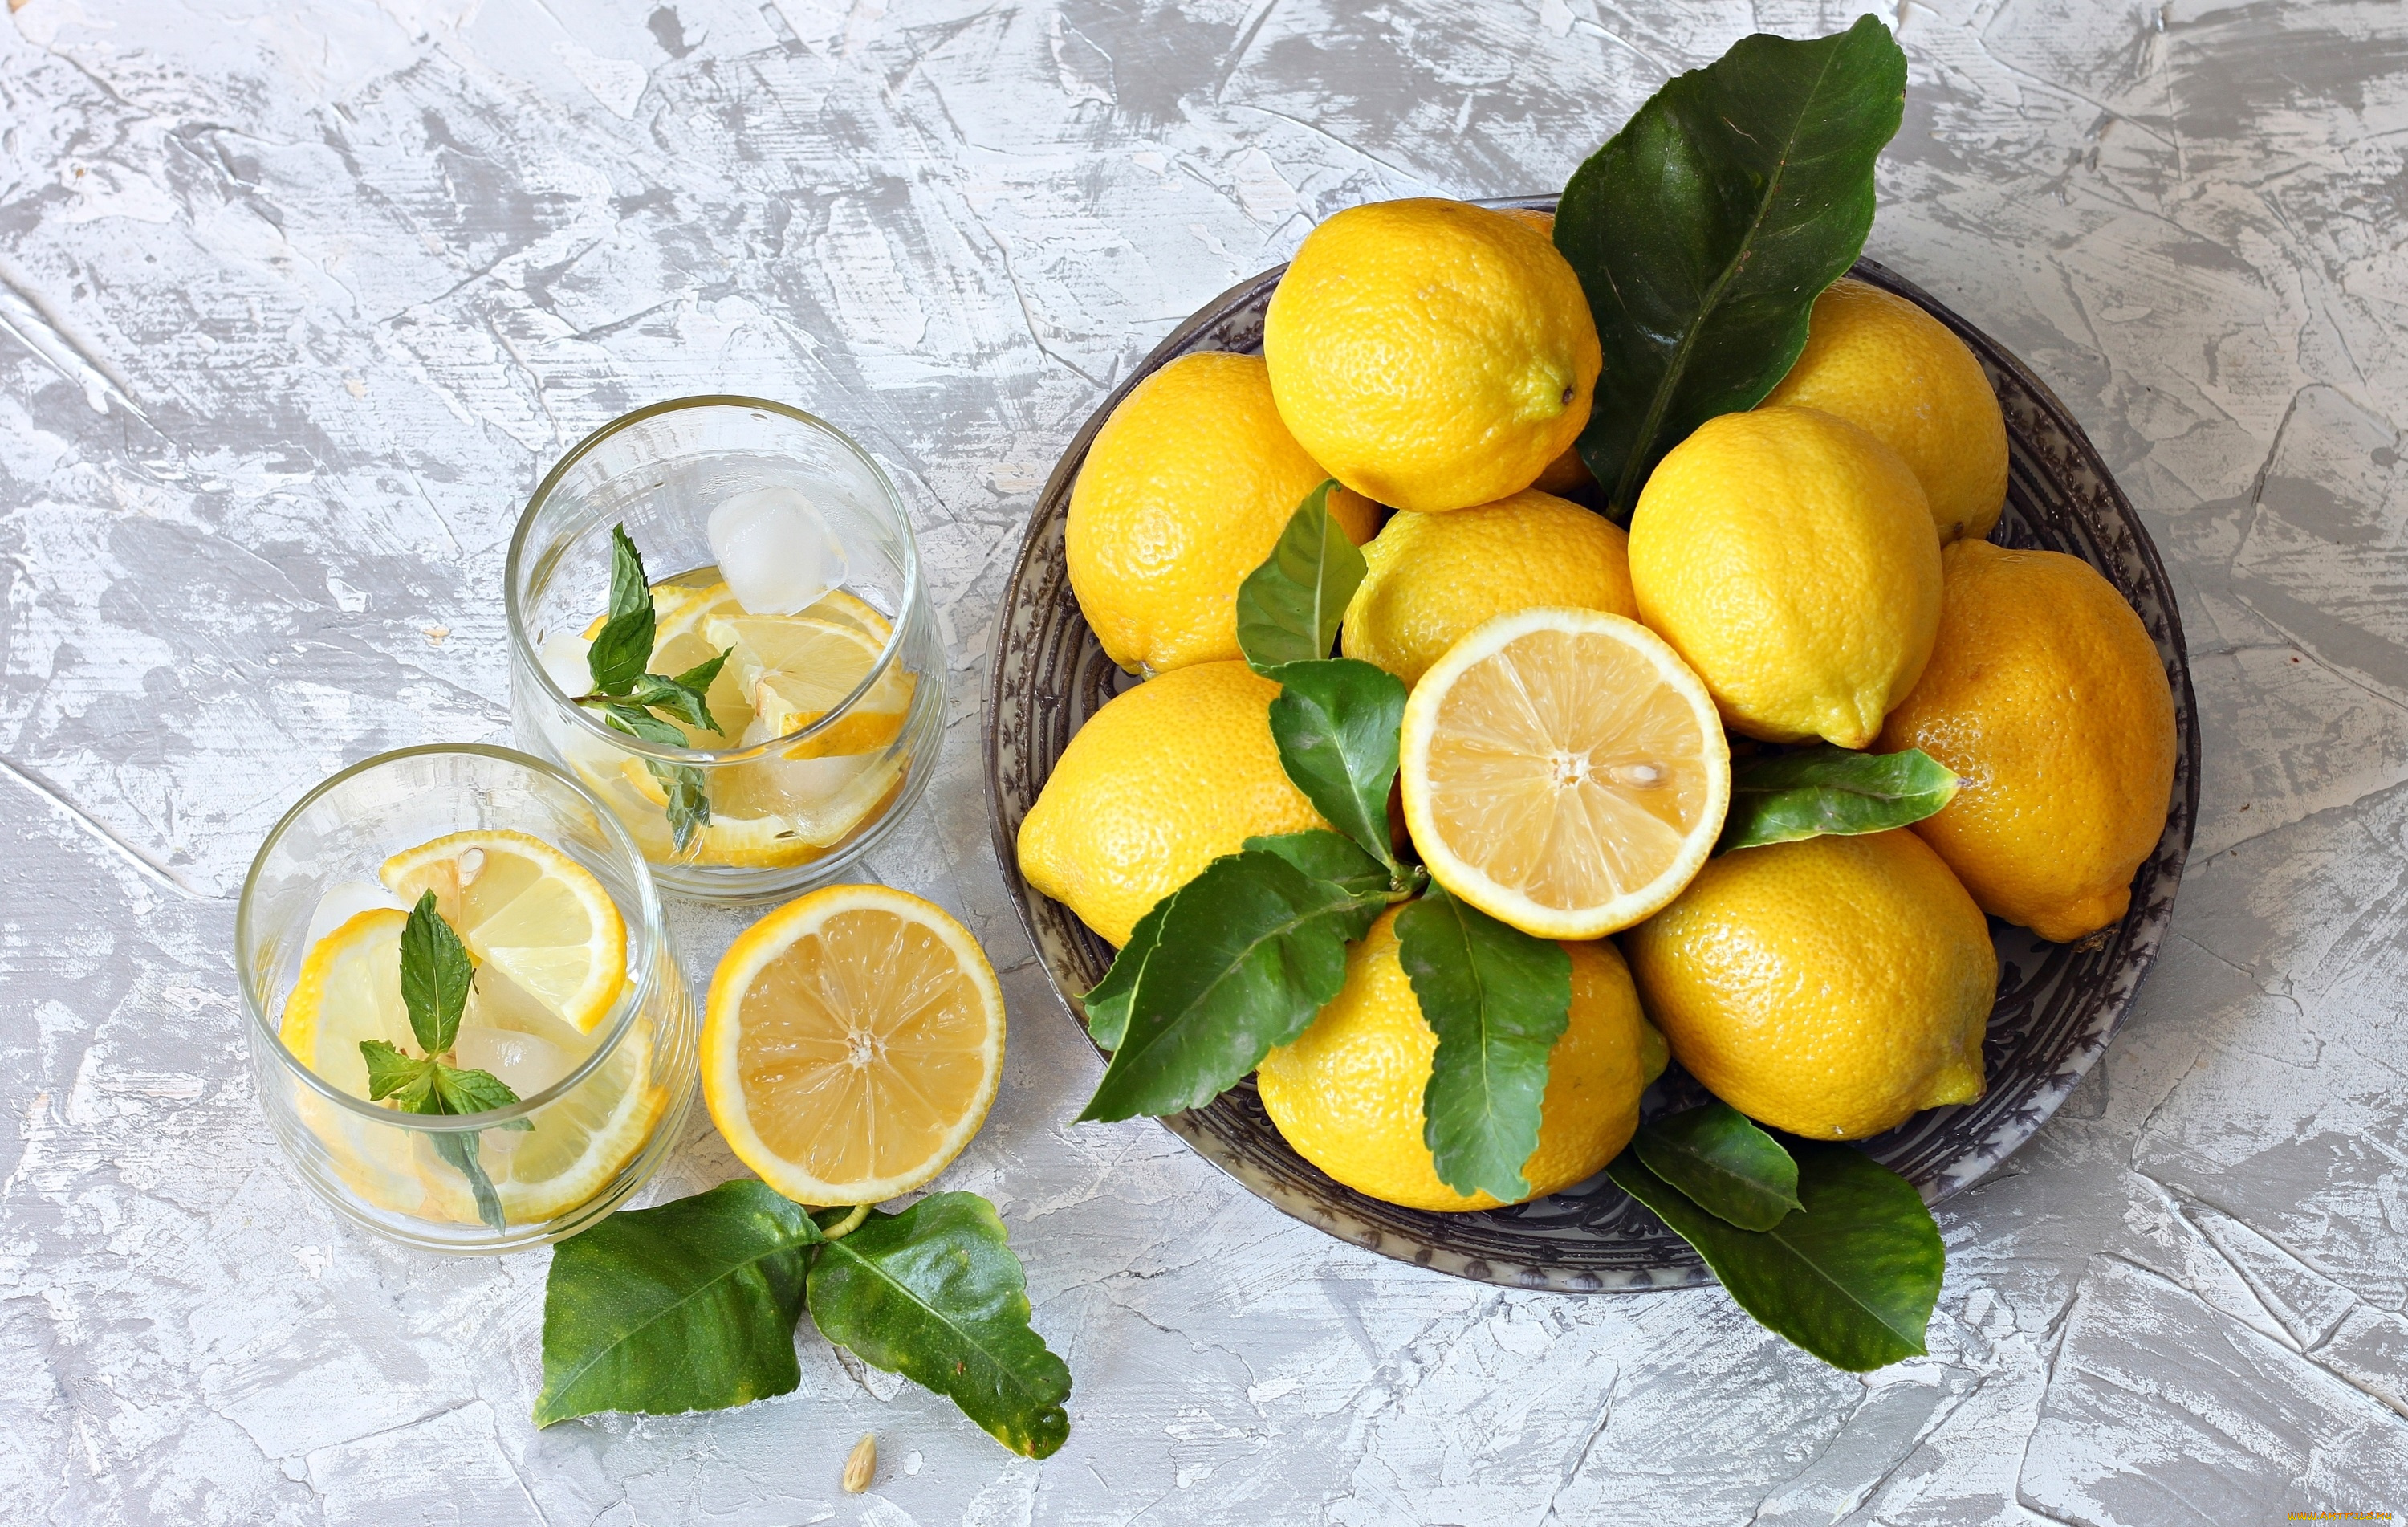 Лемон. 58. Лимон - Citrus Limon. Лимонад Гелиос лимон цитрус. Лимончелло из Лайма. Микс цитрус лимонный.